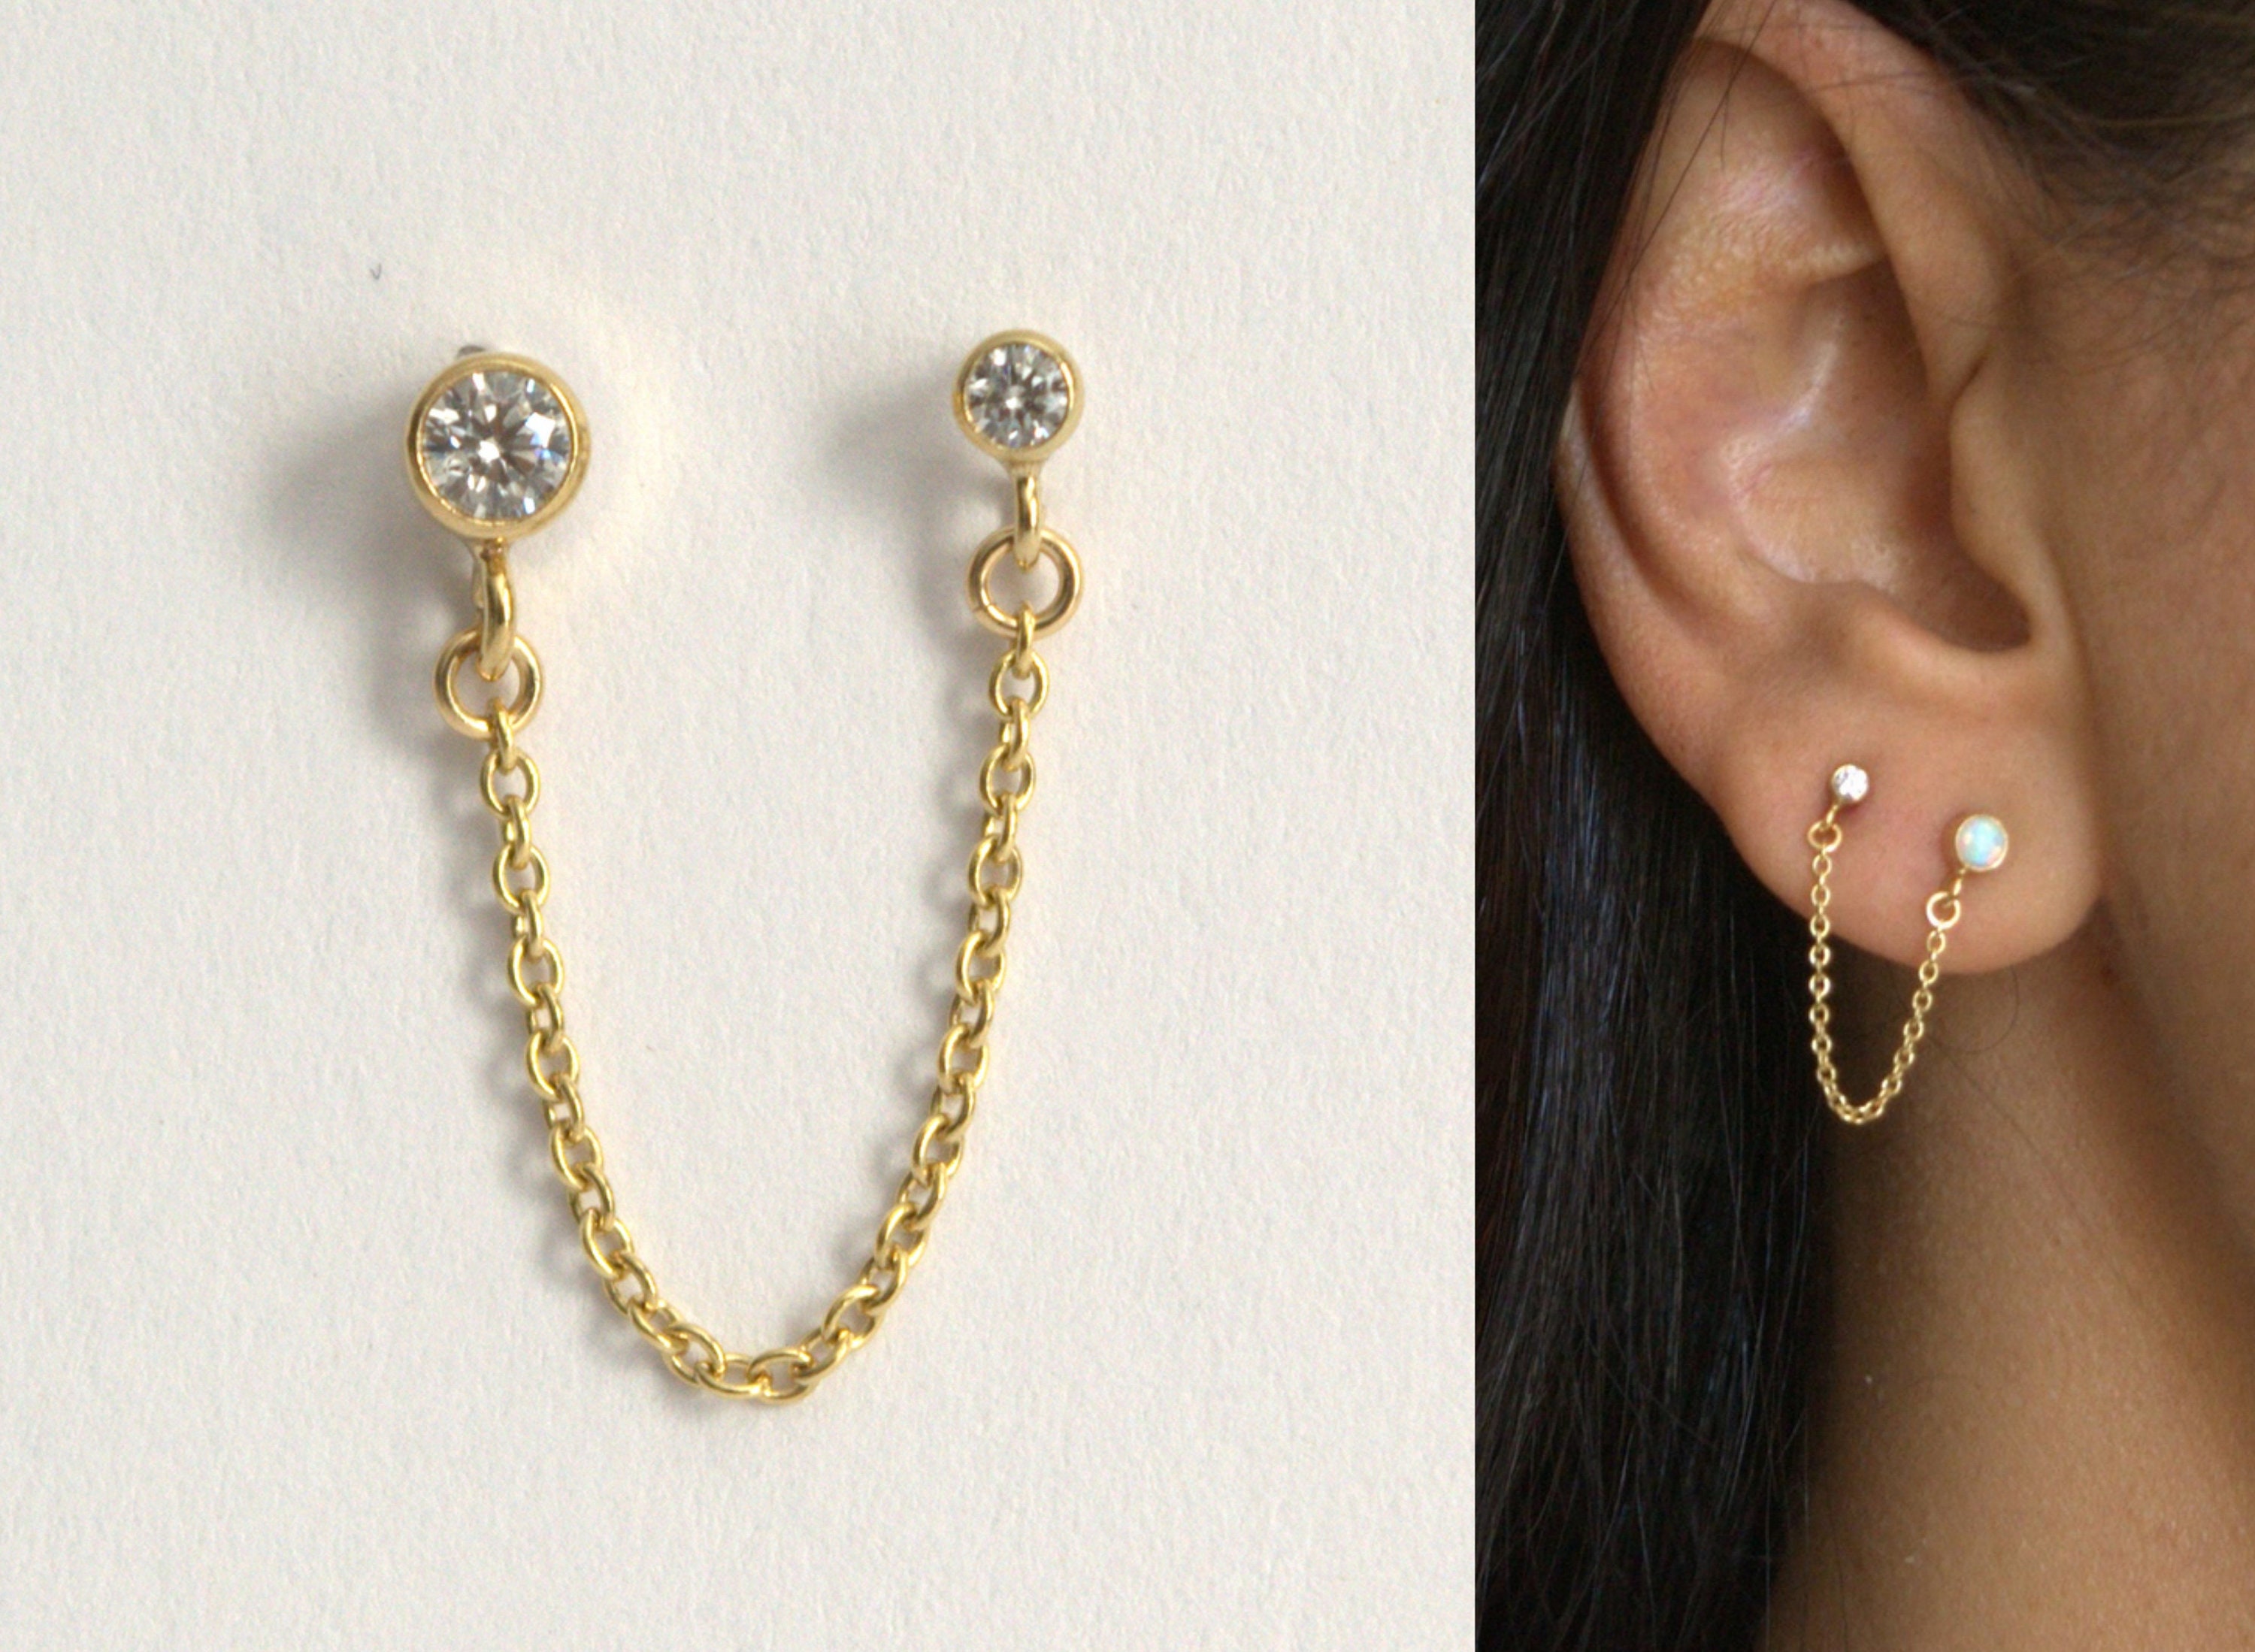 Double Piercing Earring, Chain Earrings, Cartilage Earrings, Hoop Earrings  With Chain, Double Stud Earring Gold, Small Hoops - Etsy | Double stud  earrings, Chain earrings, Earrings